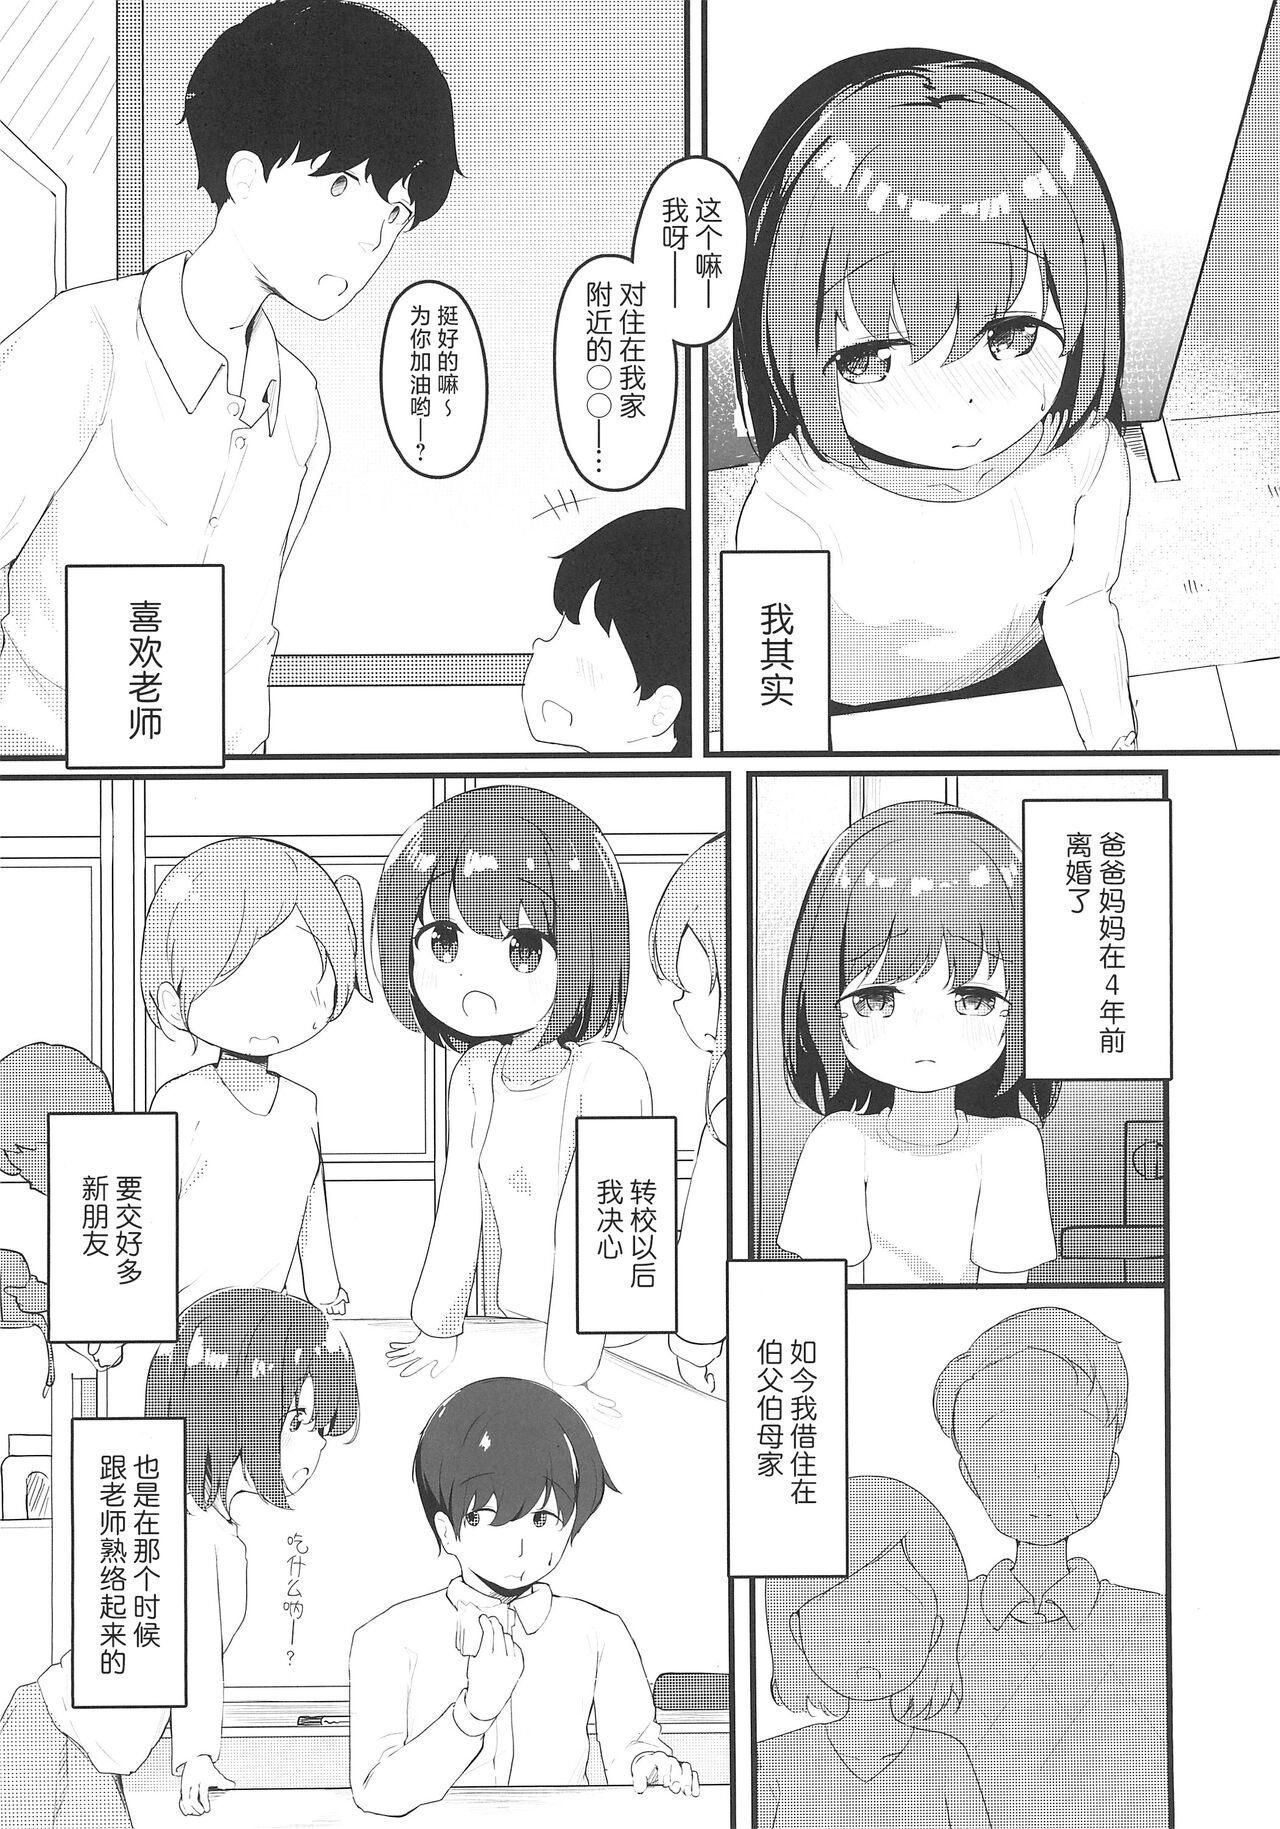 Ftvgirls Watashi ga Kanojo ja Dame desu ka? 3 | 我难道不可以成为你的女友吗?3 - Original Kashima - Page 5